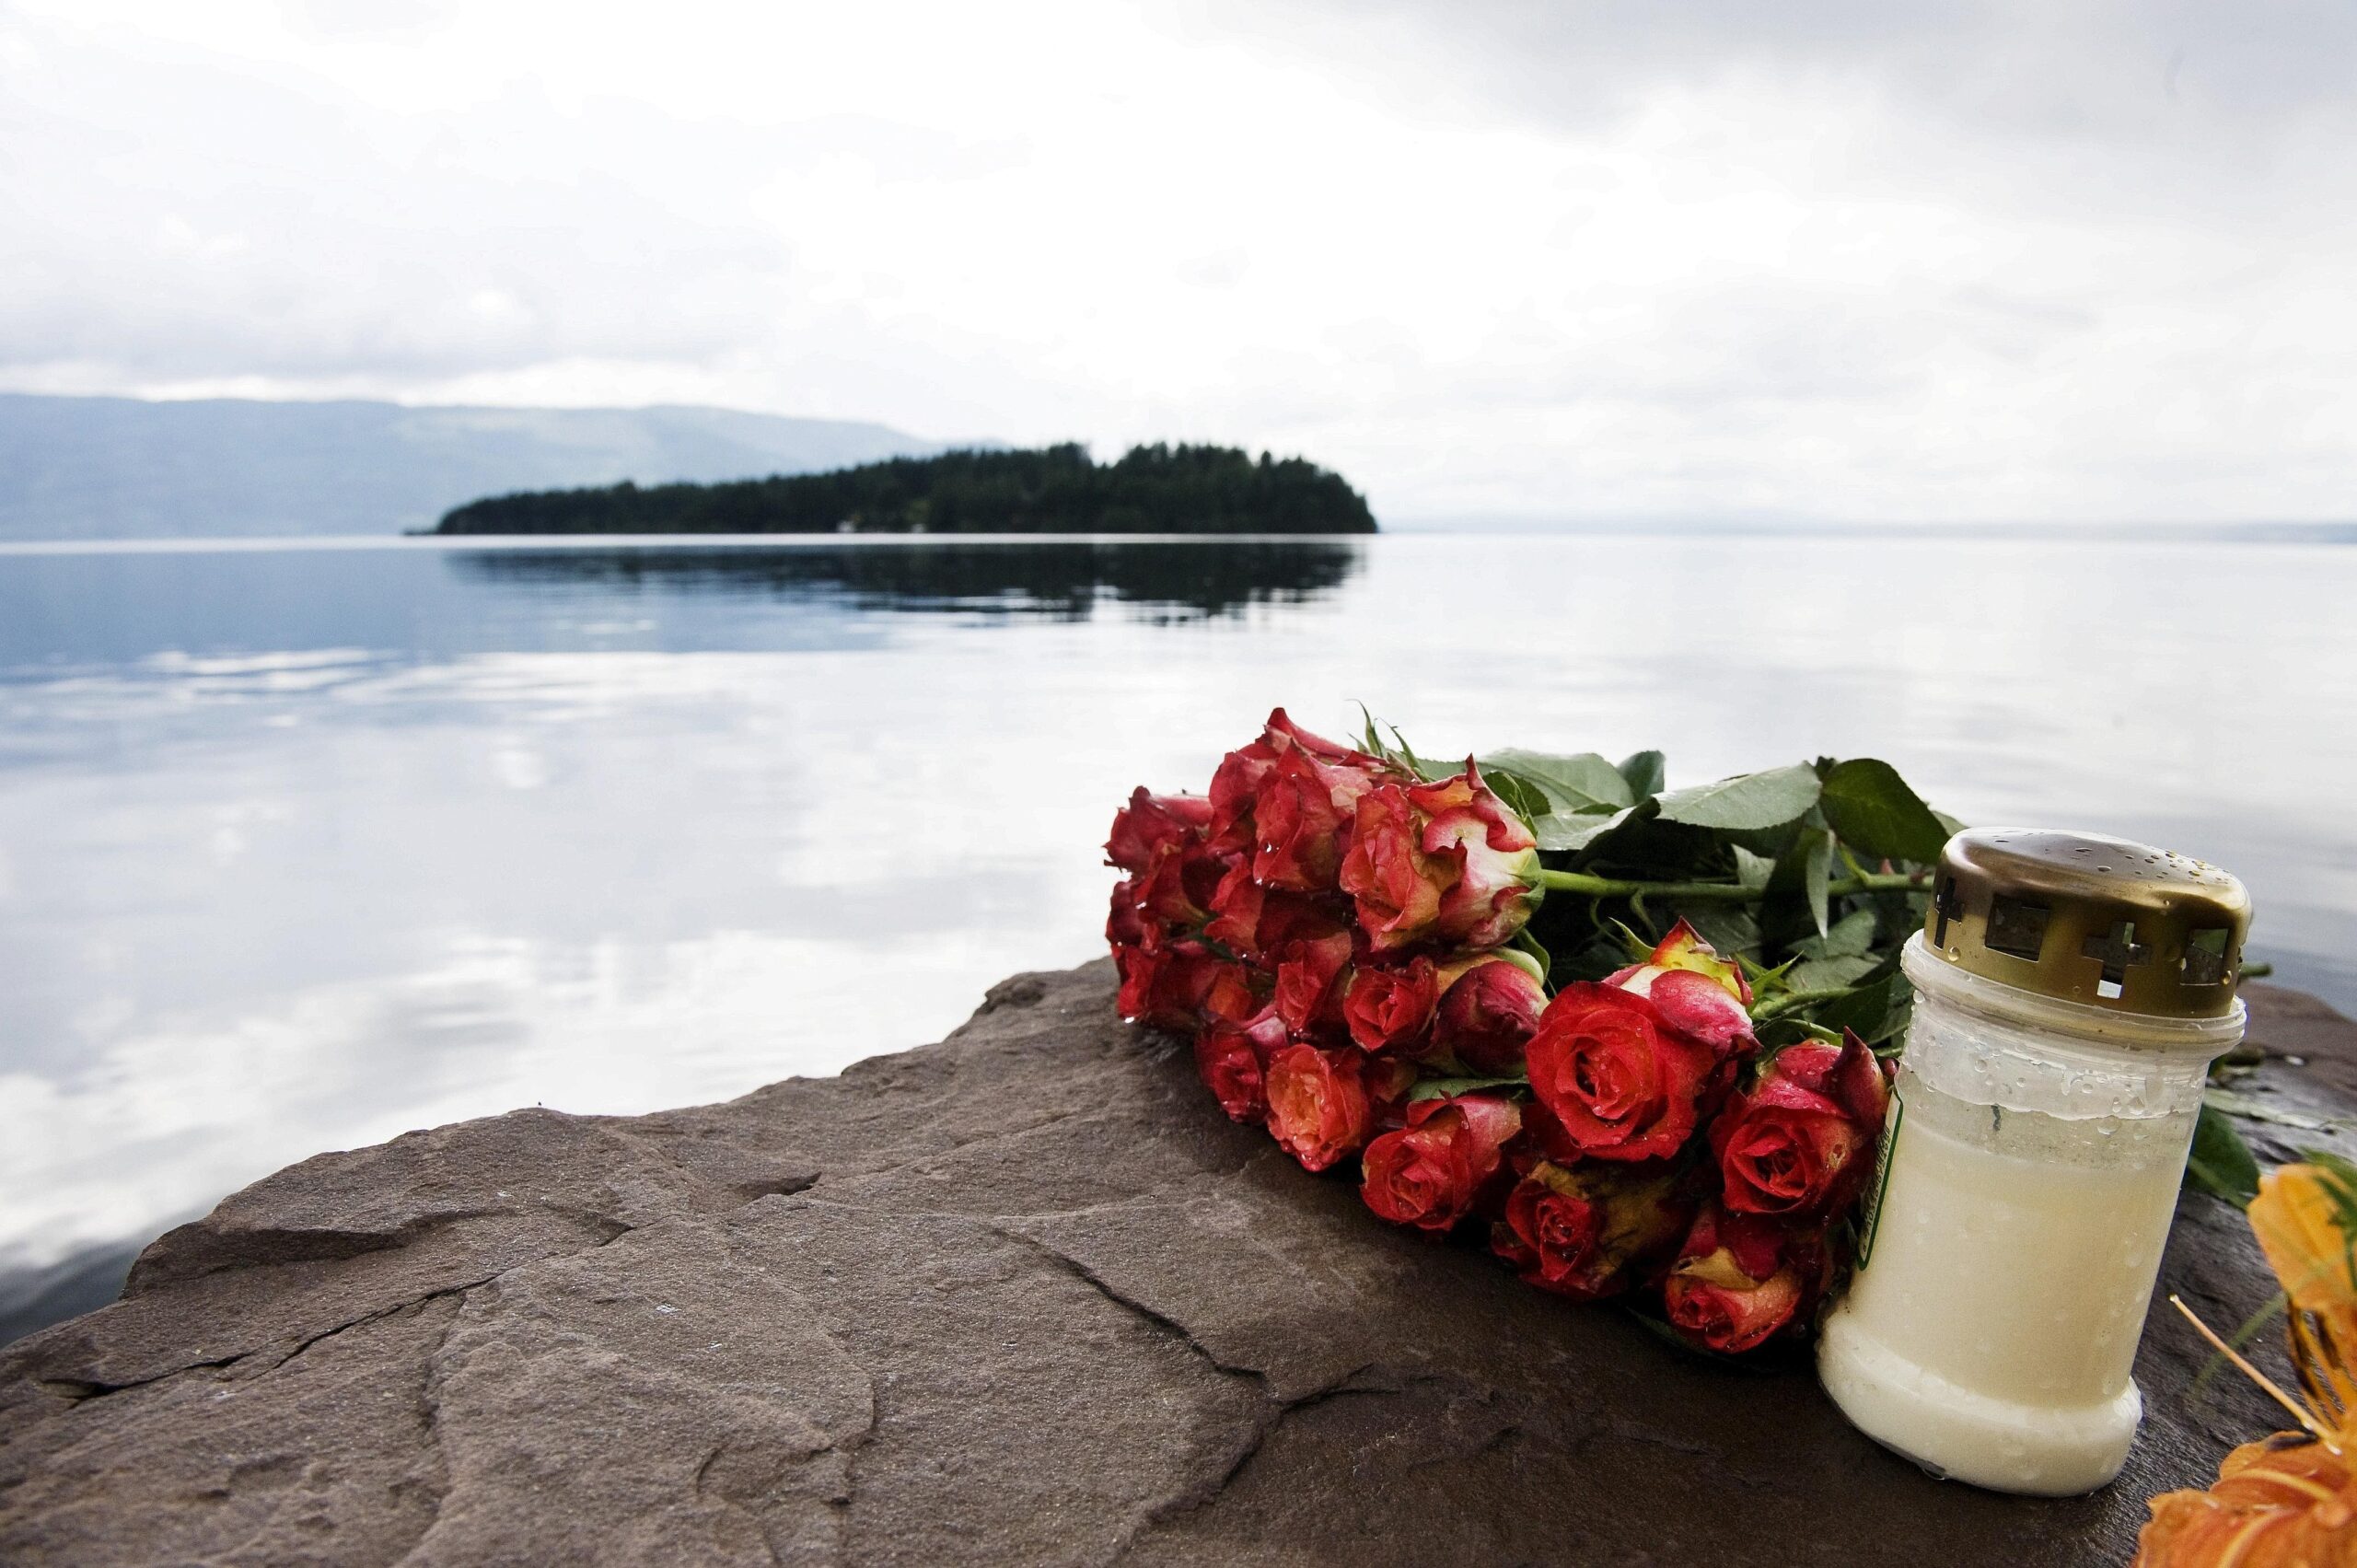 Idyllisch liegt die Insel Utöya im Wasser. Für die Teilnehmer am Jugendcamp wurde sie zur Hölle.